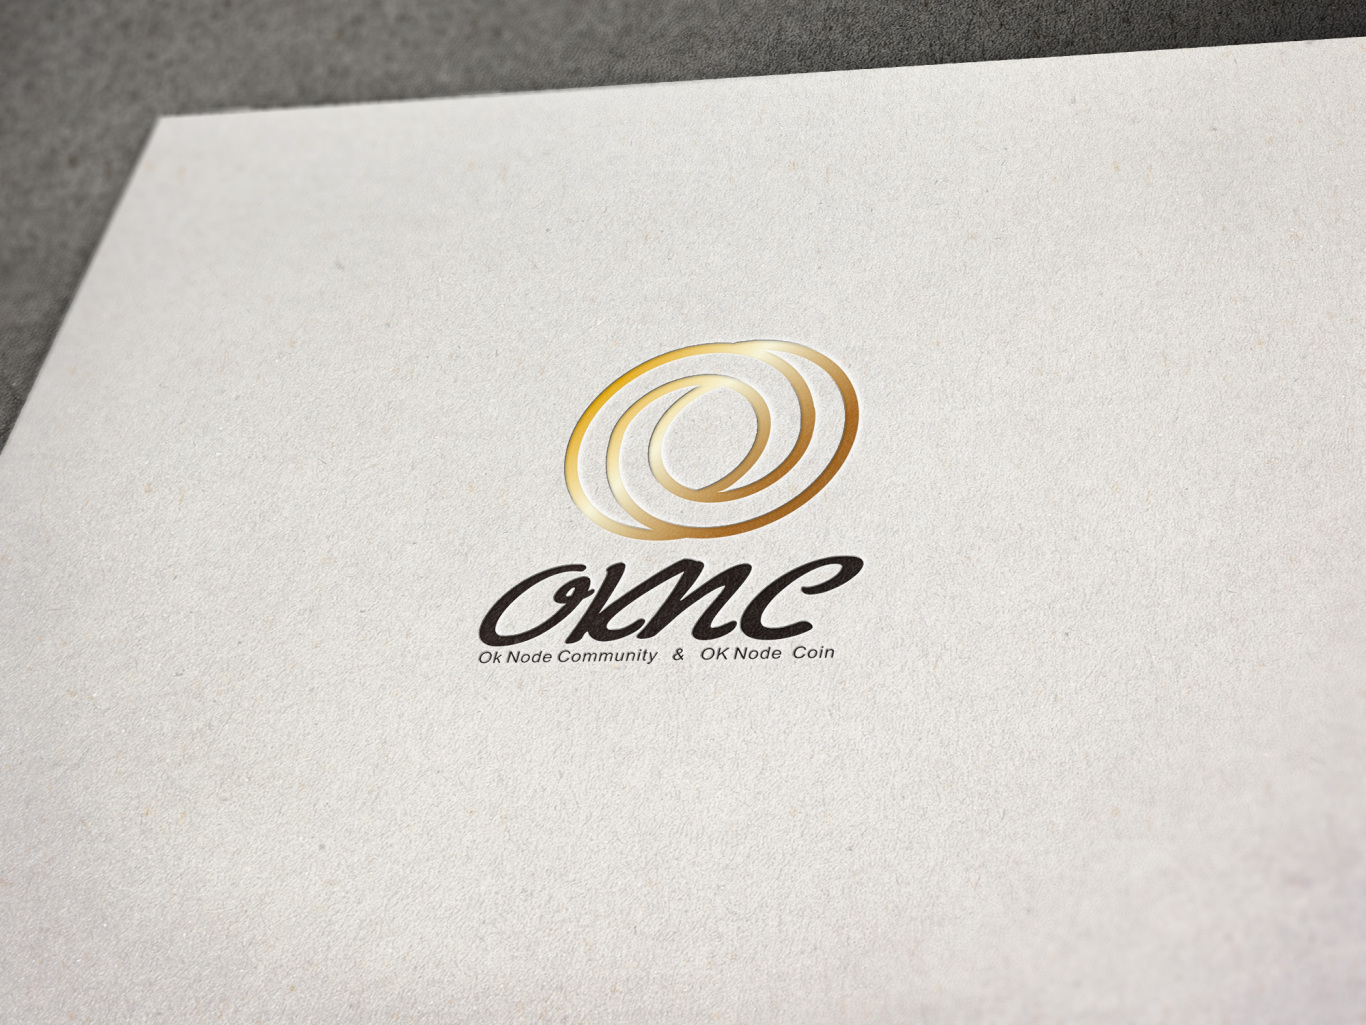 oknc区块链社区logo设计图0